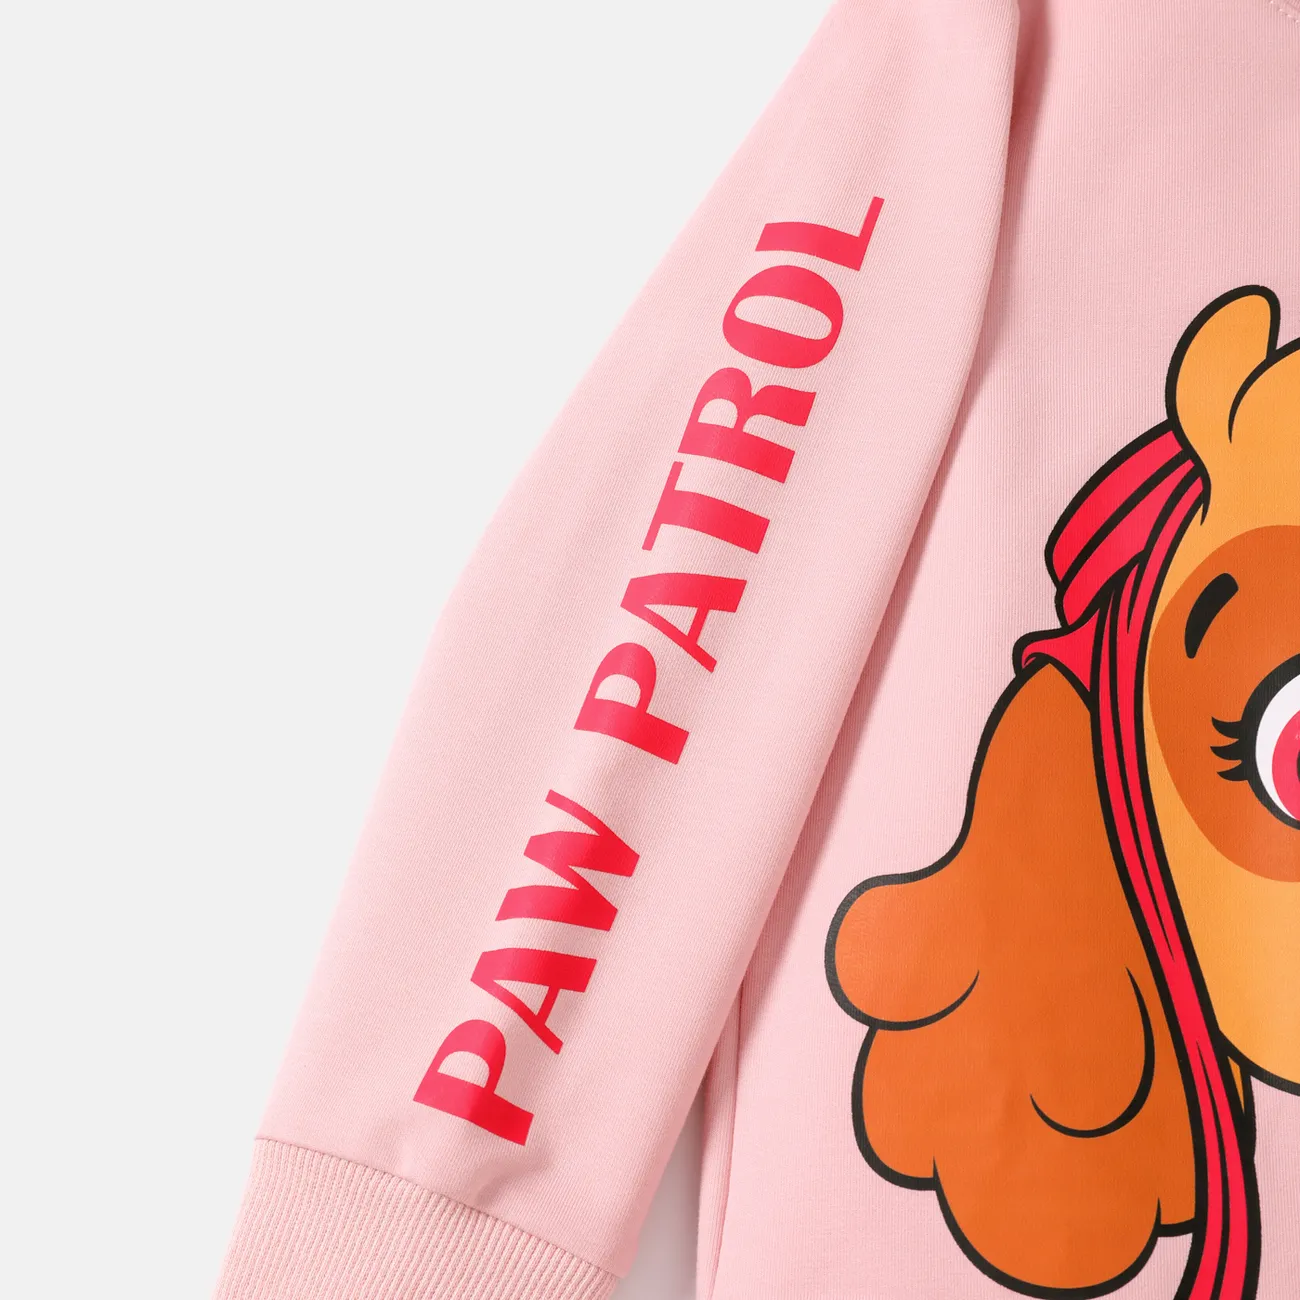 PAW Patrol Toddler Girl/Boy Character Print Cotton Hoodie Sweatshirt Pink big image 1